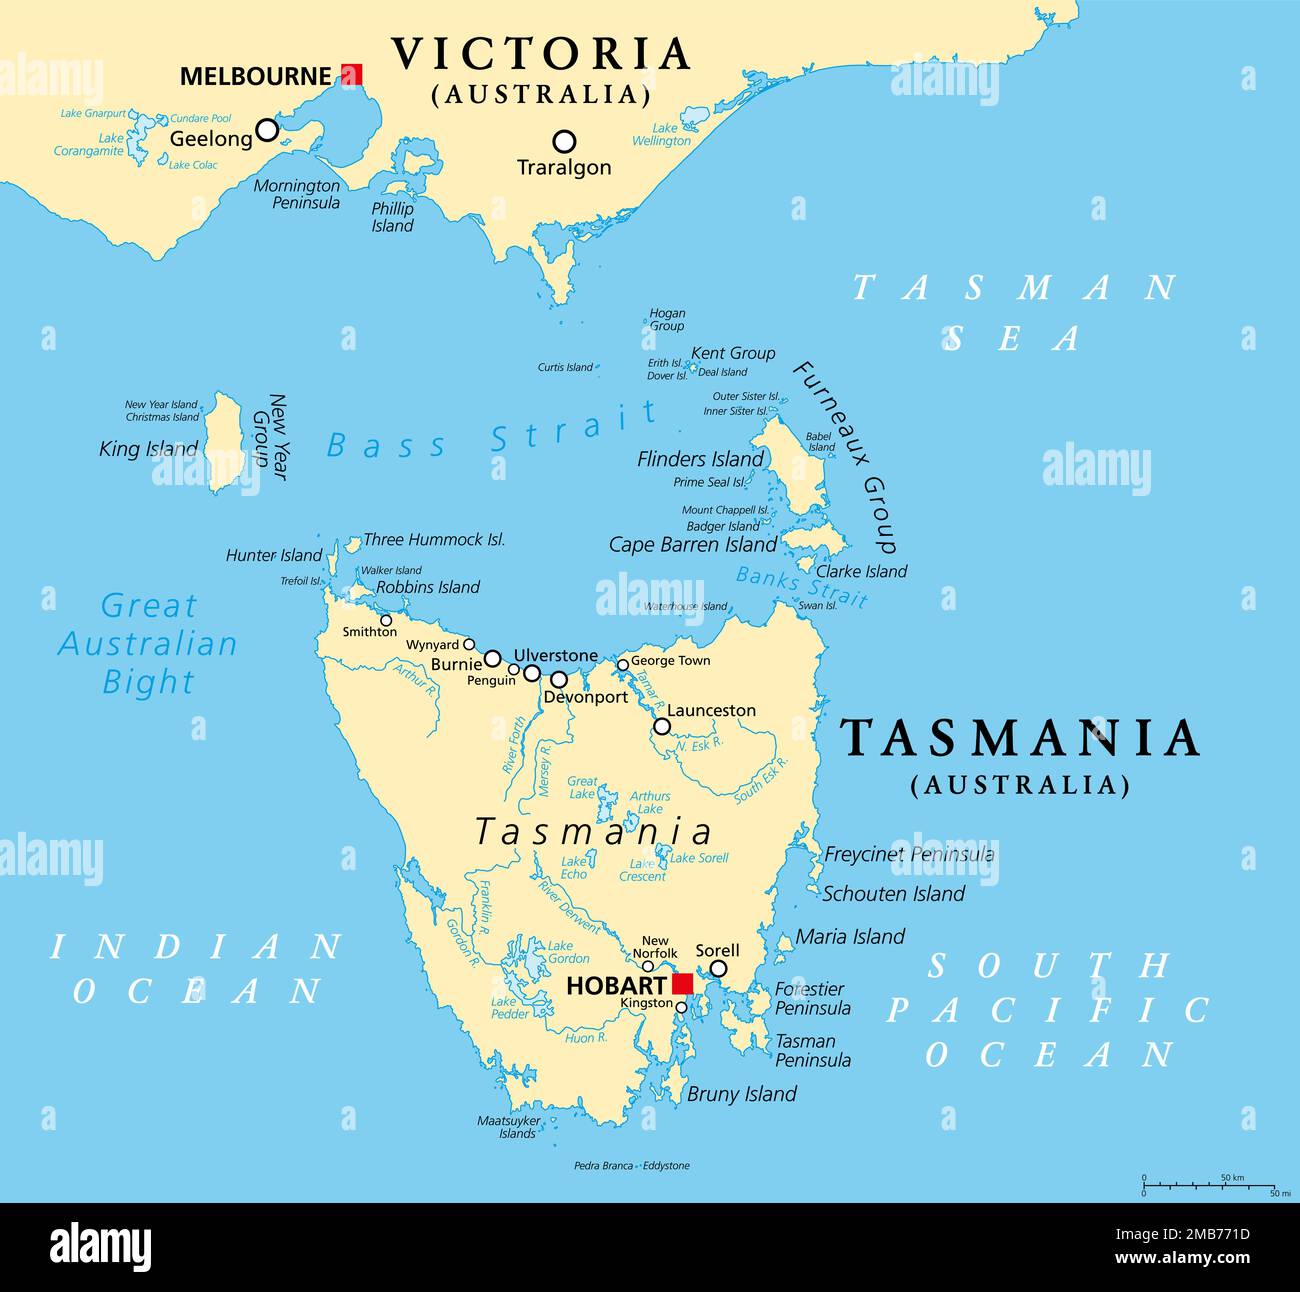 Tasmanie et ses environs, carte politique. État insulaire australien avec la capitale Hobart, au sud de l'état Victoria et du continent australien. Banque D'Images